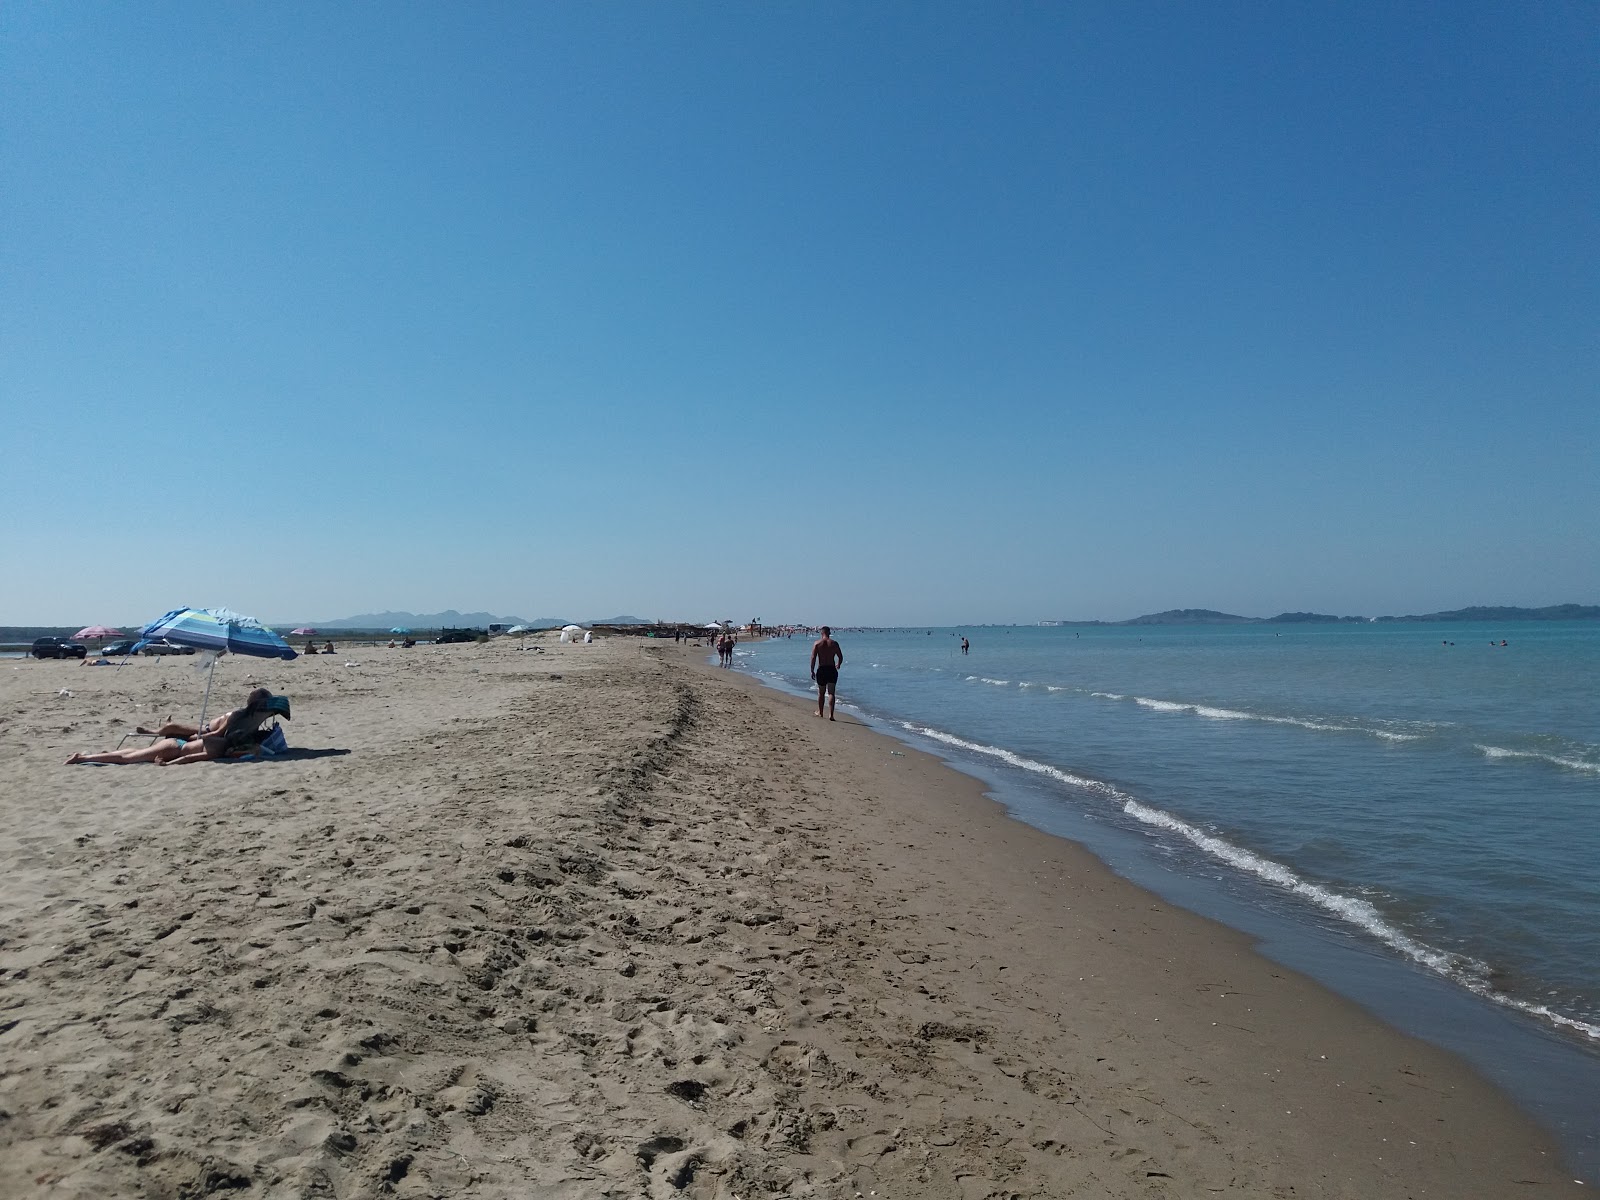 Fotografie cu Cristal Rinia beach - locul popular printre cunoscătorii de relaxare